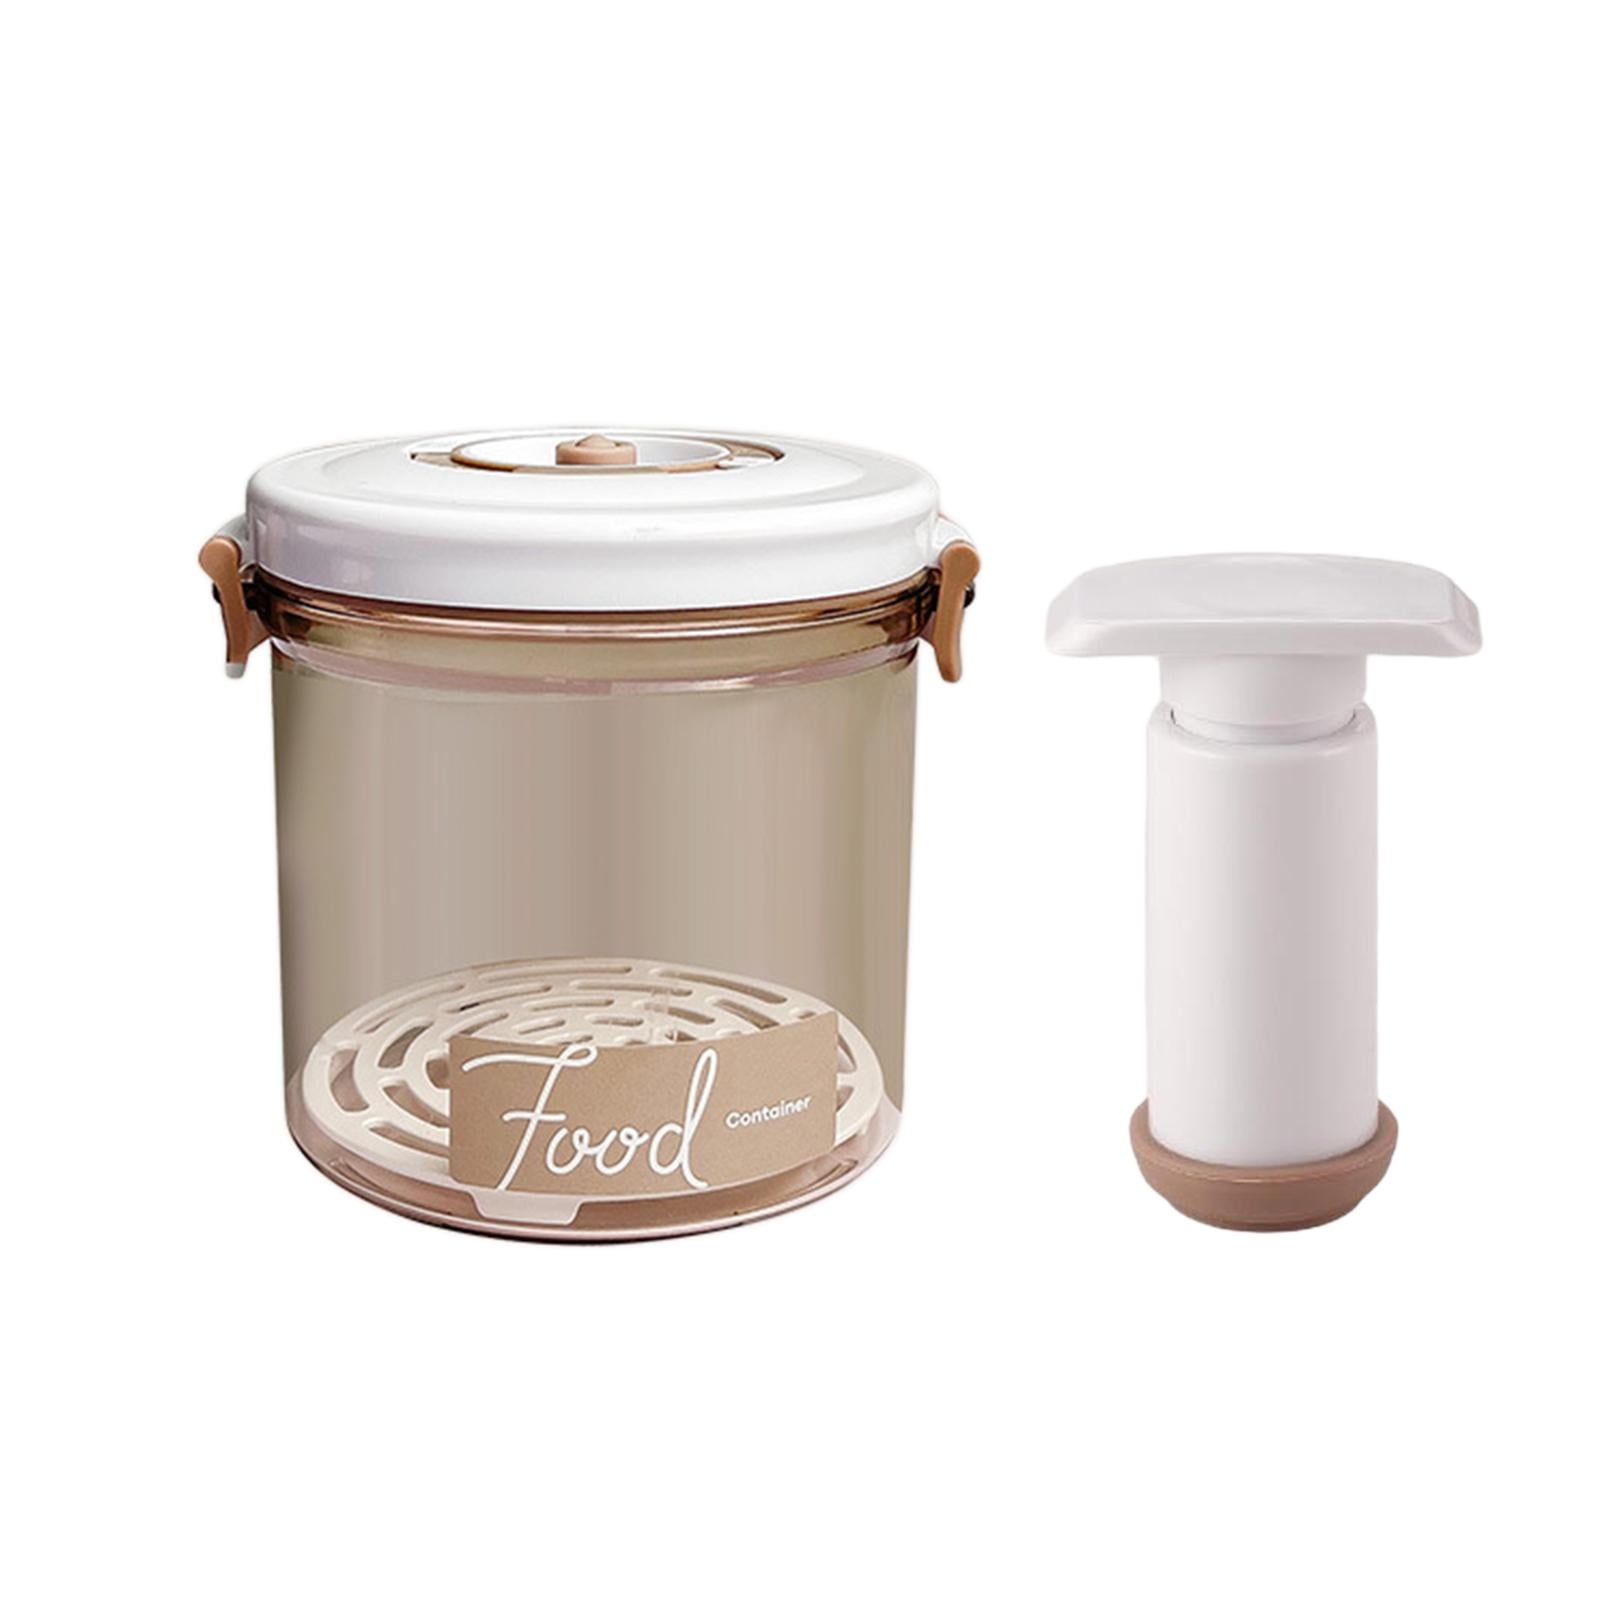 Vacuum Food Container Auto-Vacuum Canister Airtight Storage Jars